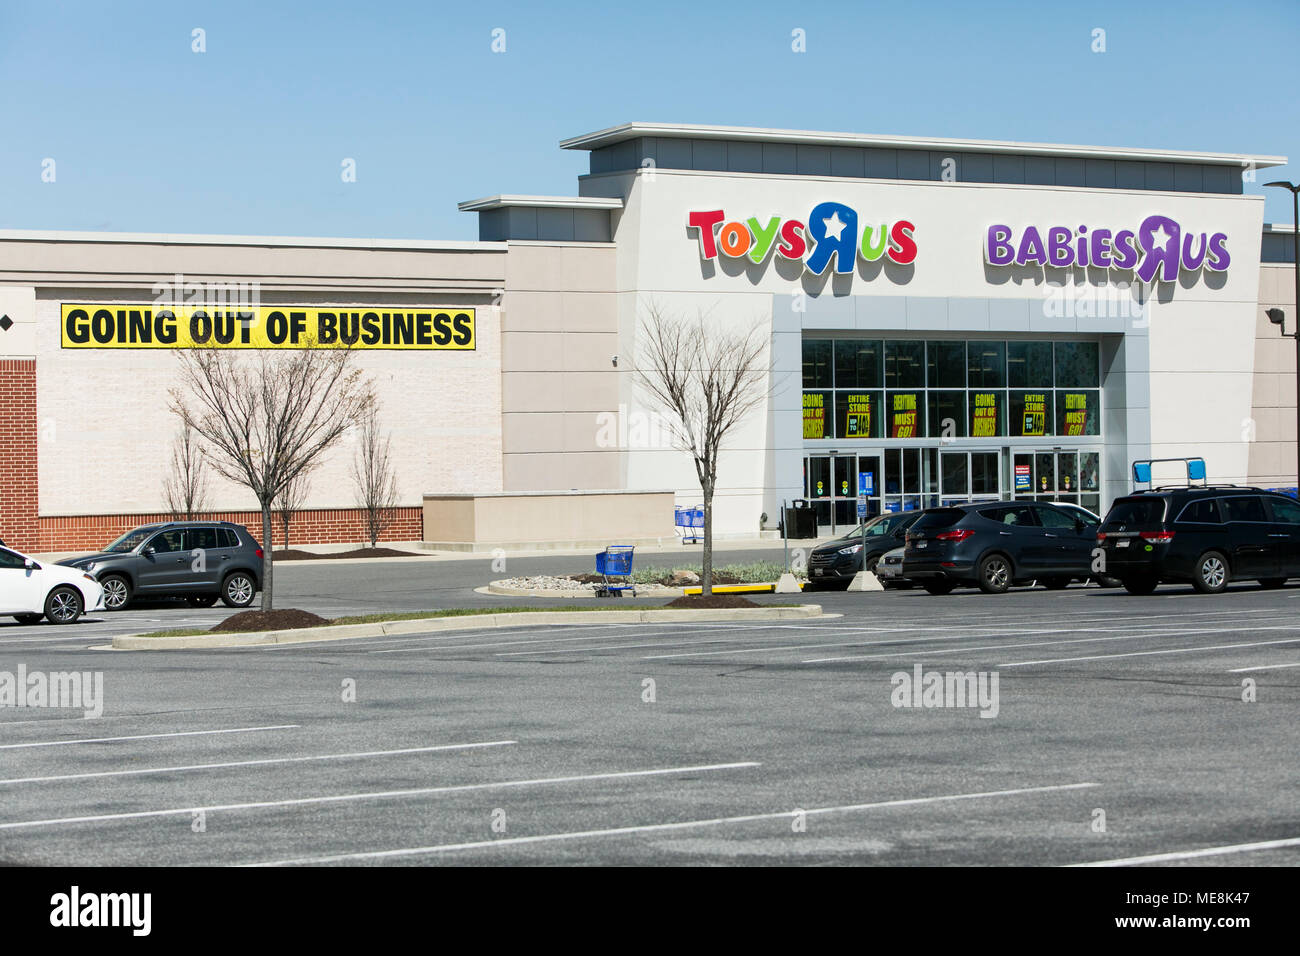 Un logo affiche à l'extérieur d'un comité conjoint de Toys "R" Us et Babies "R" Us store de Columbia, Maryland, avec 'Fermeture de l'entreprise de signalisation' le 20 avril, 2018 Banque D'Images